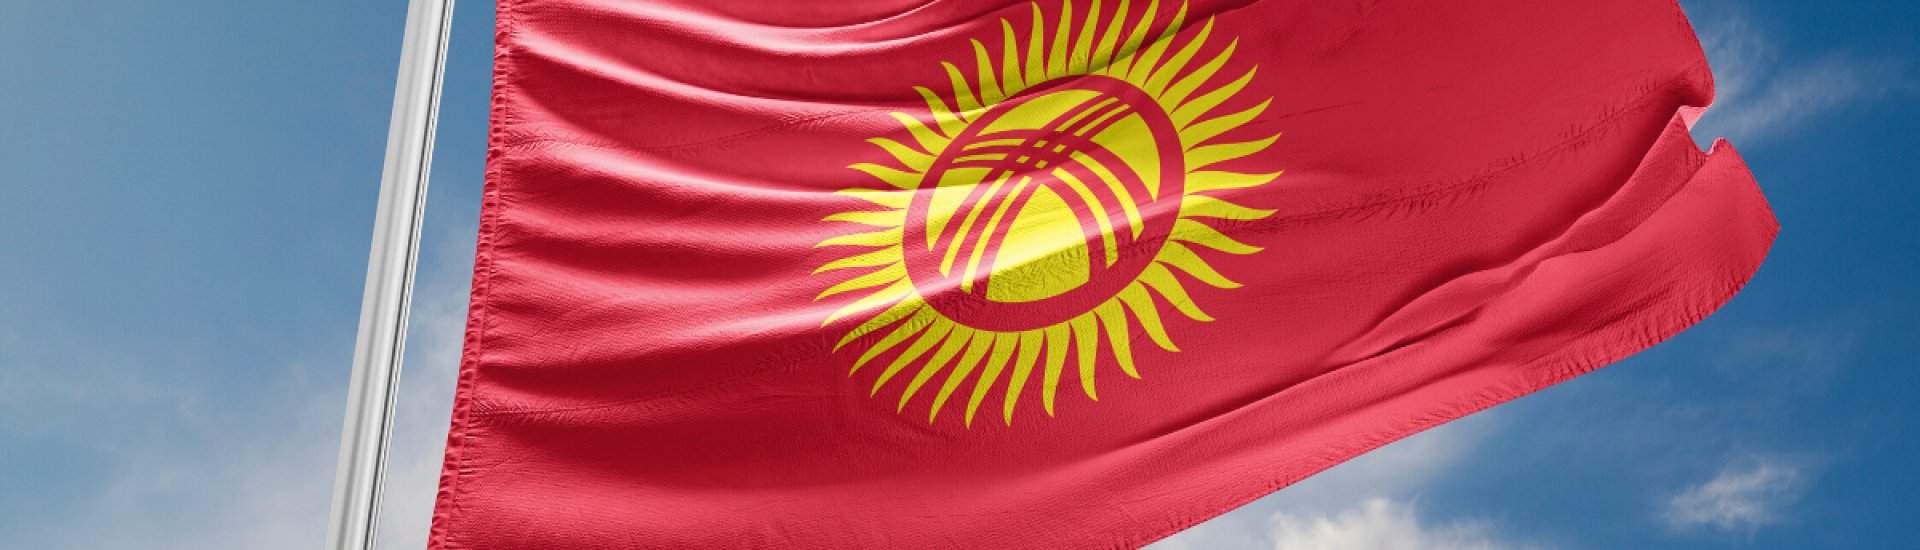 Кыргызстан вошел в ТОП-20 
стран-реформаторов рейтинга 
Doing Business 2020